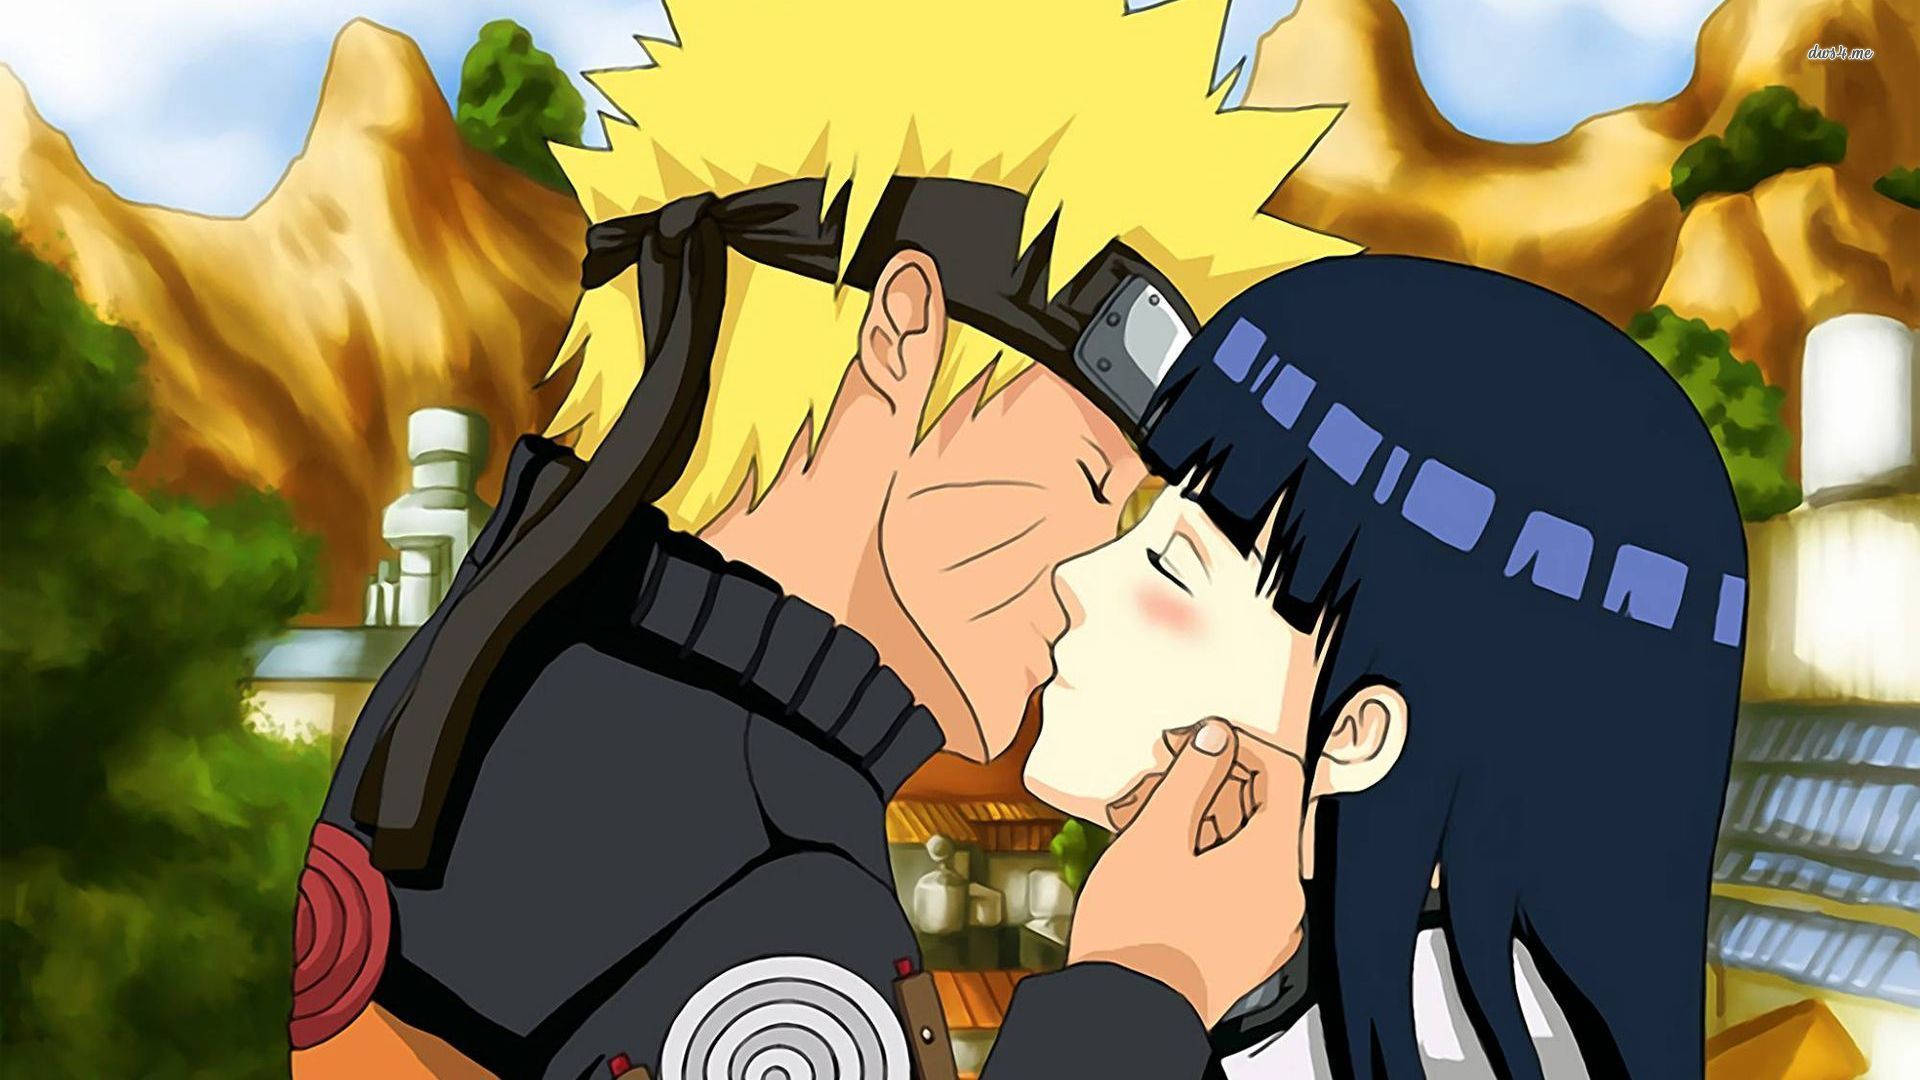 Naruto And Hinata Kiss Wallpaper